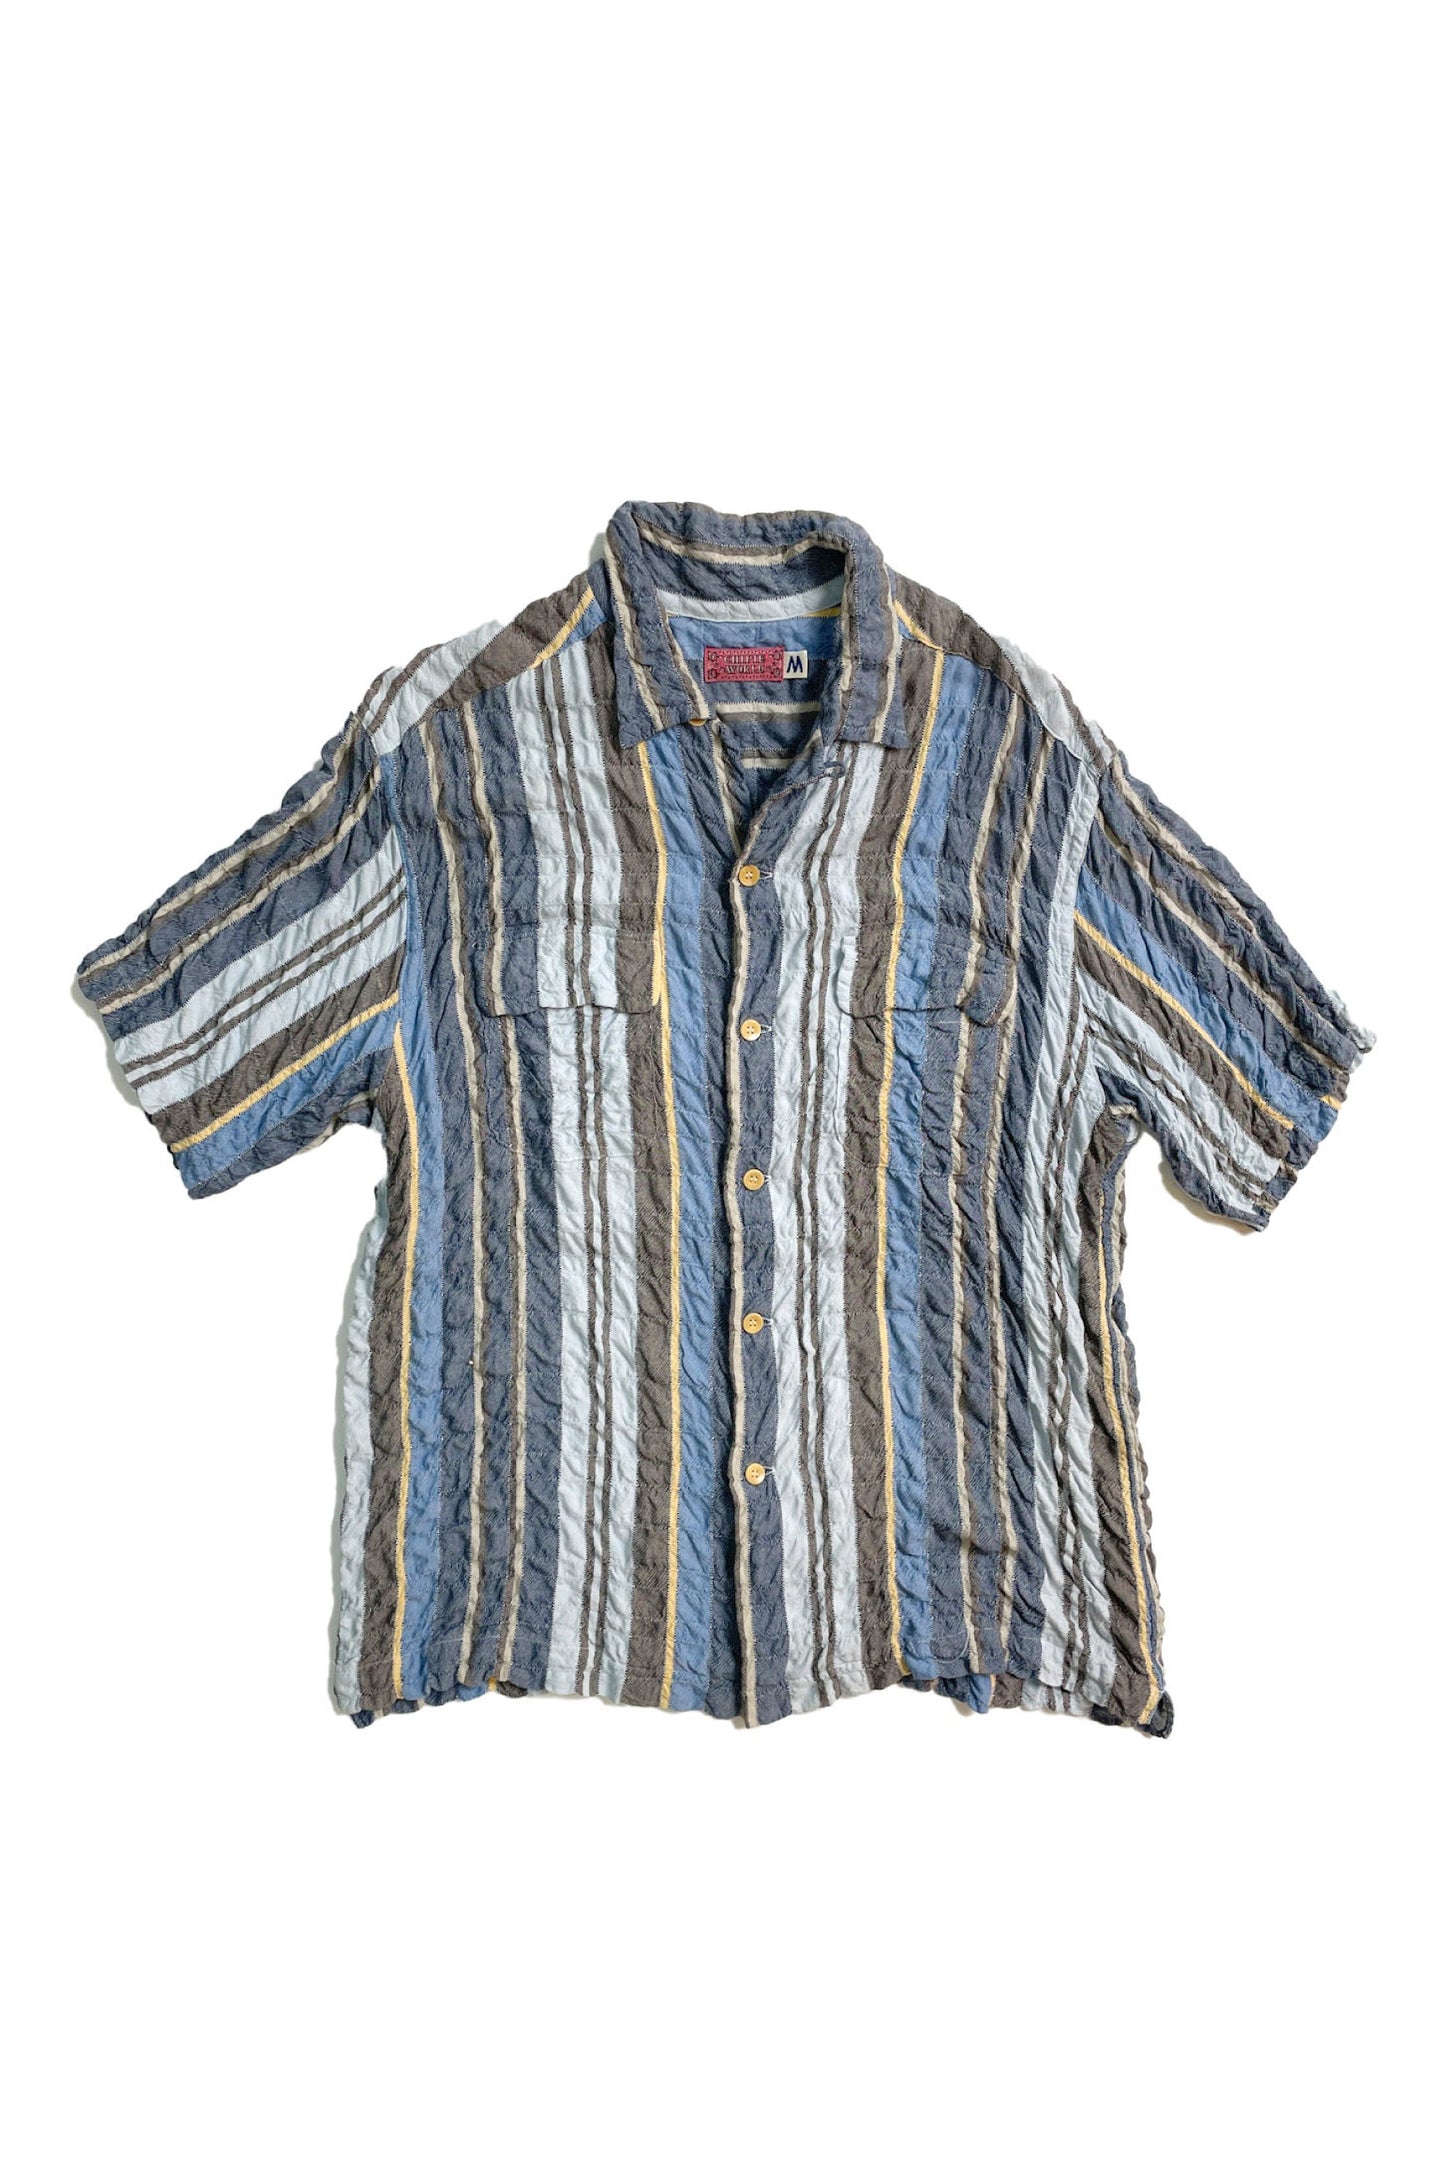 90's CHIPIE WORLD rayon open collar shirt